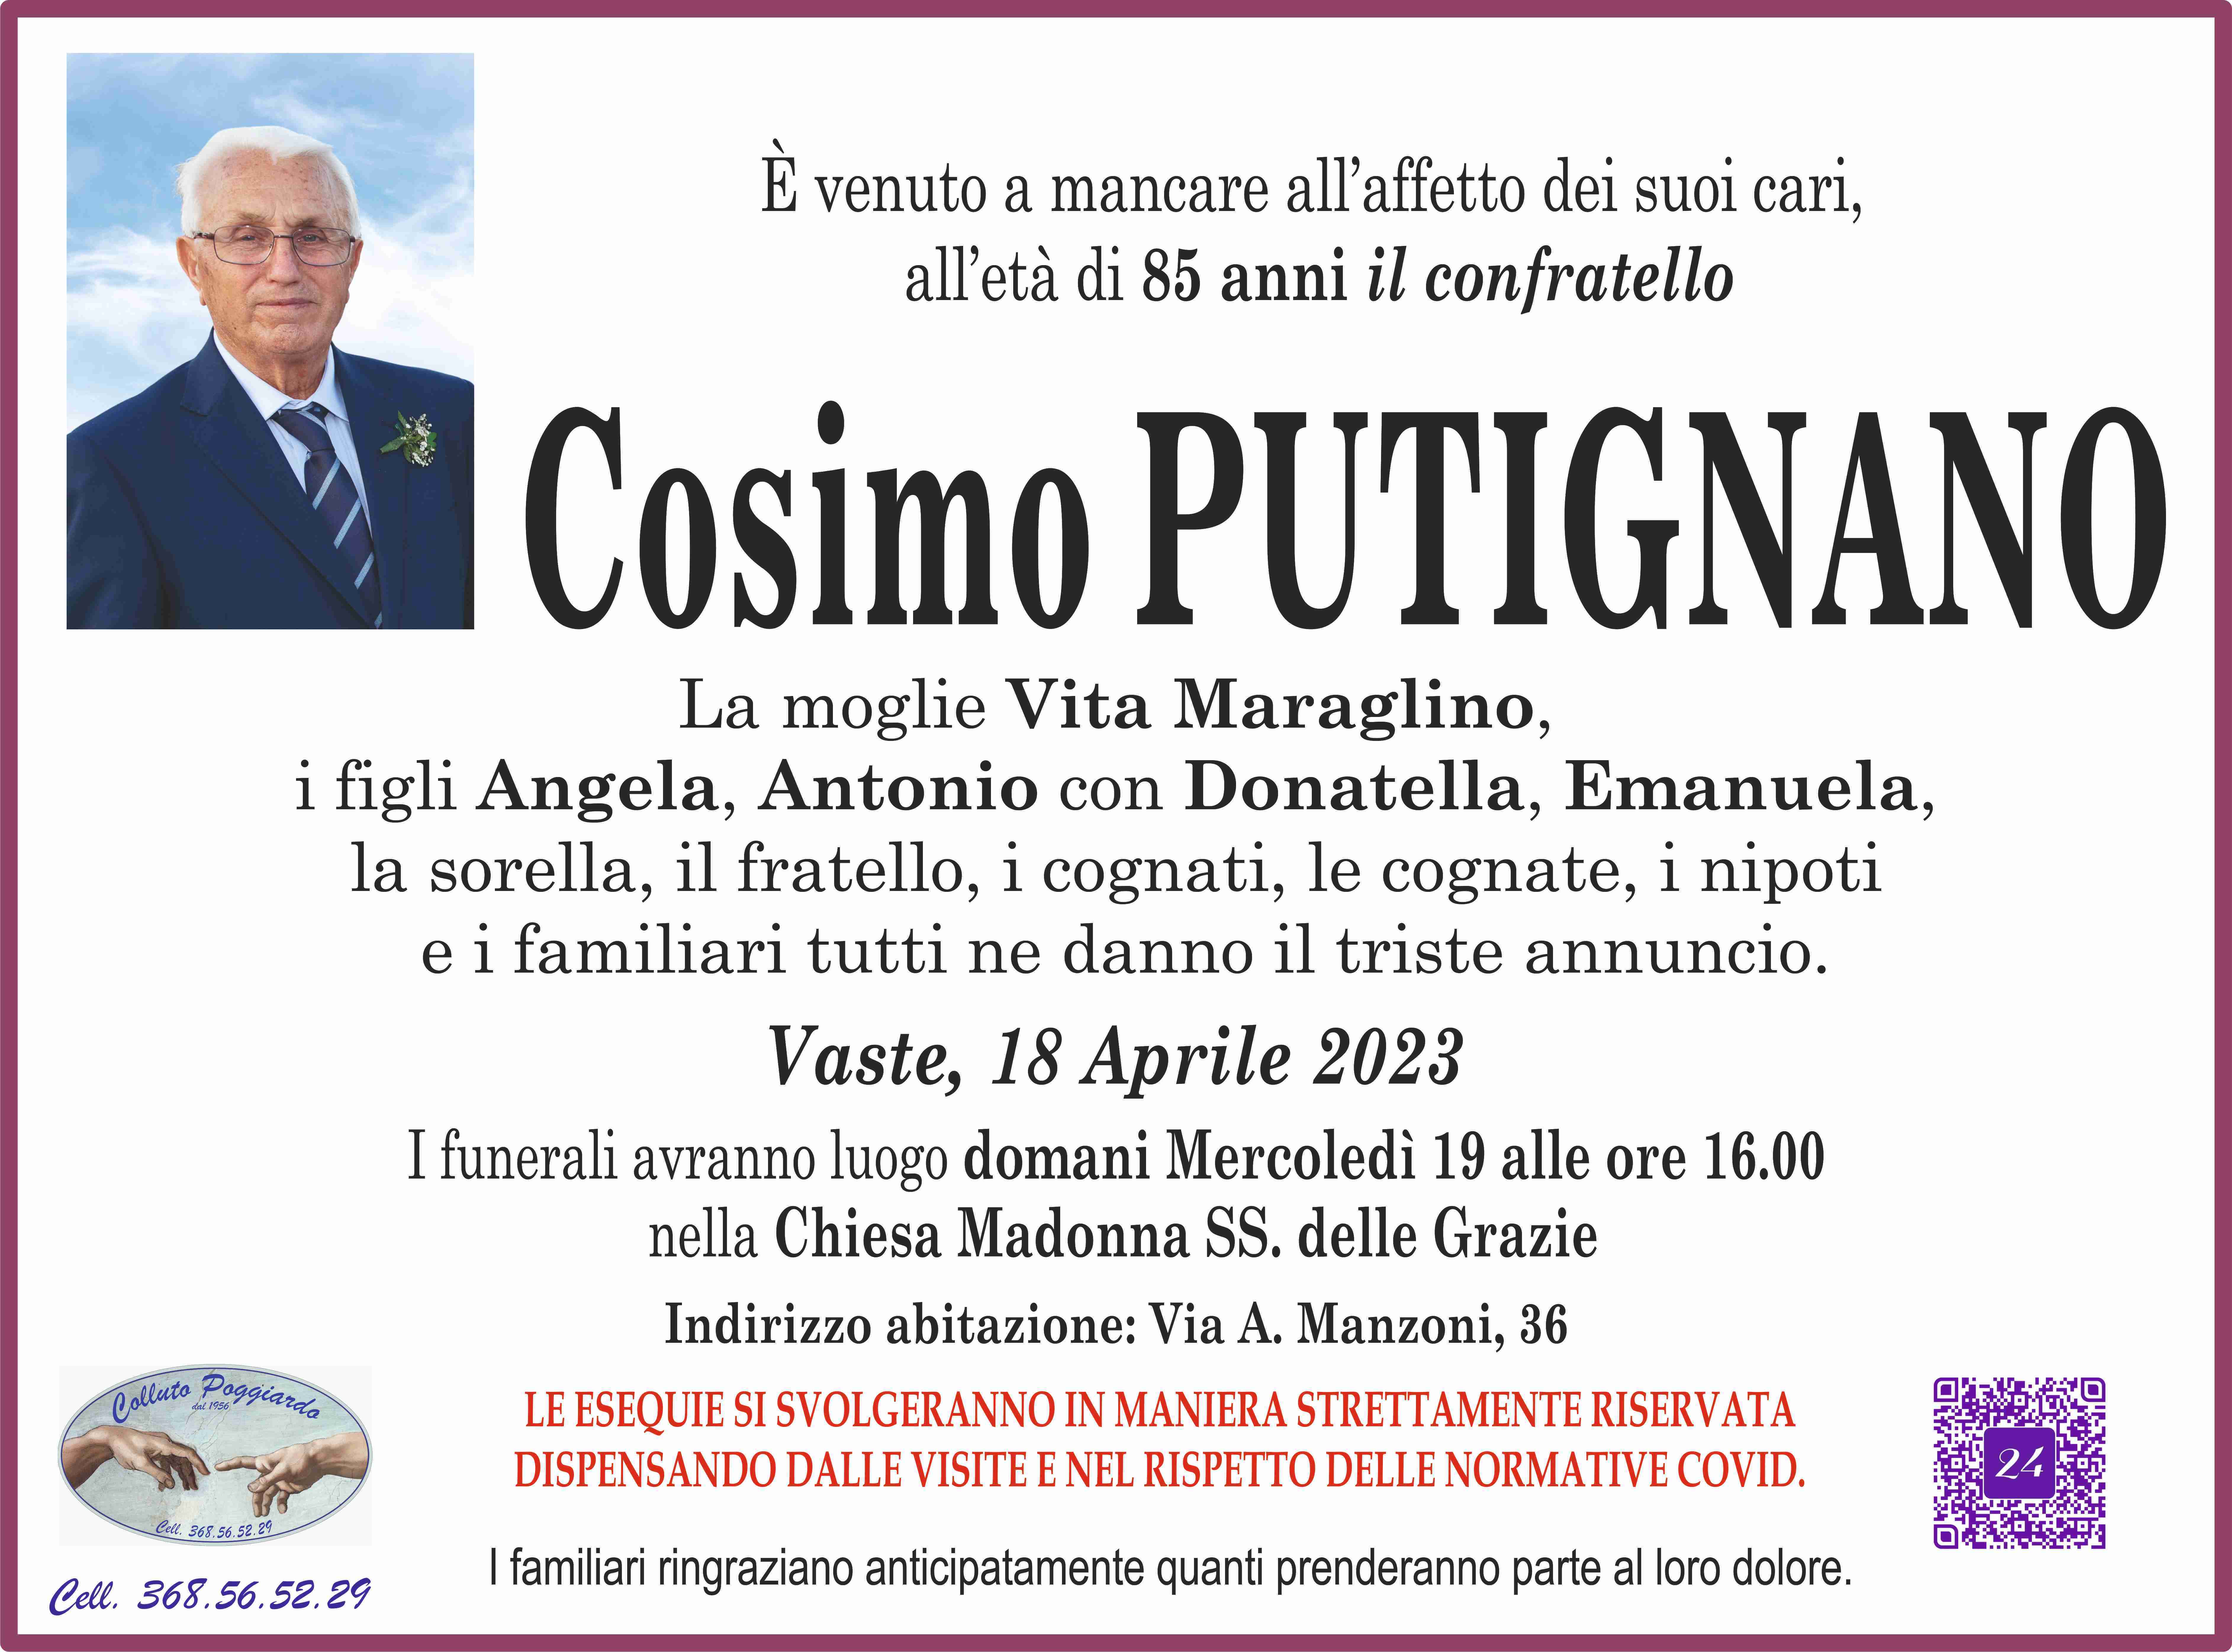 Cosimo Putignano